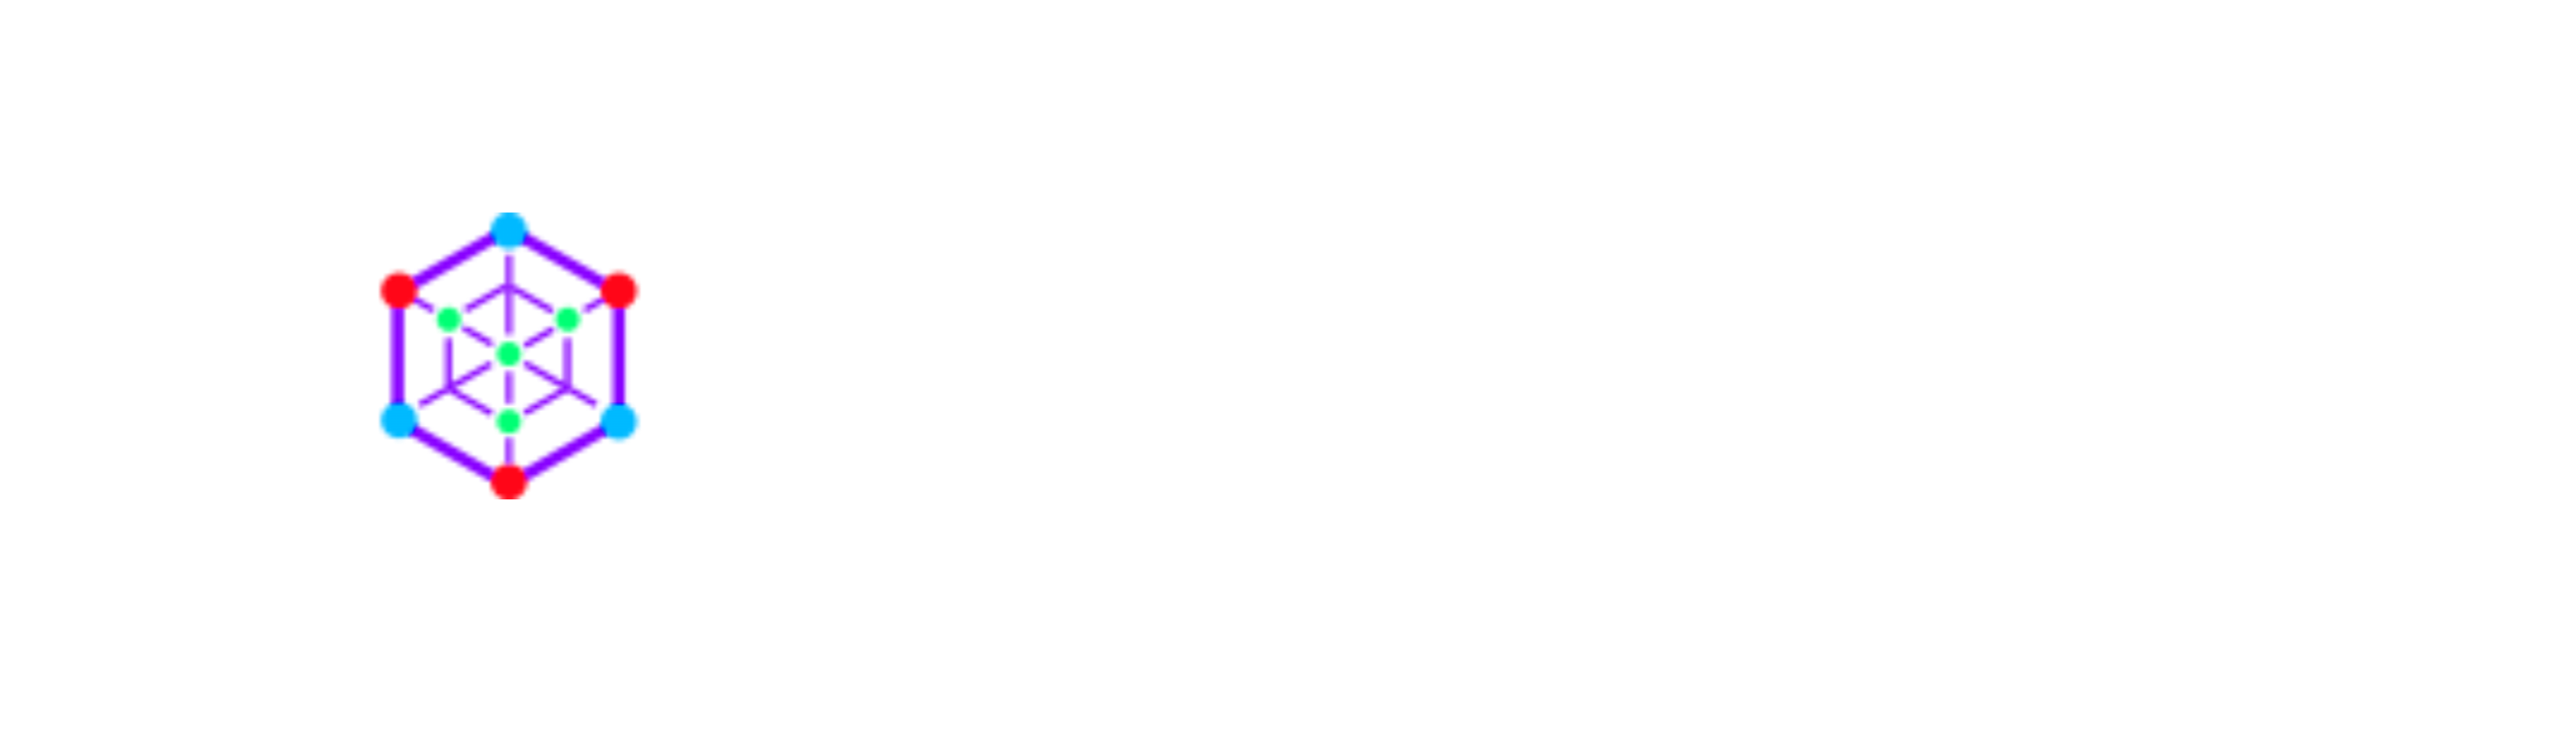 www.cryptofames.com